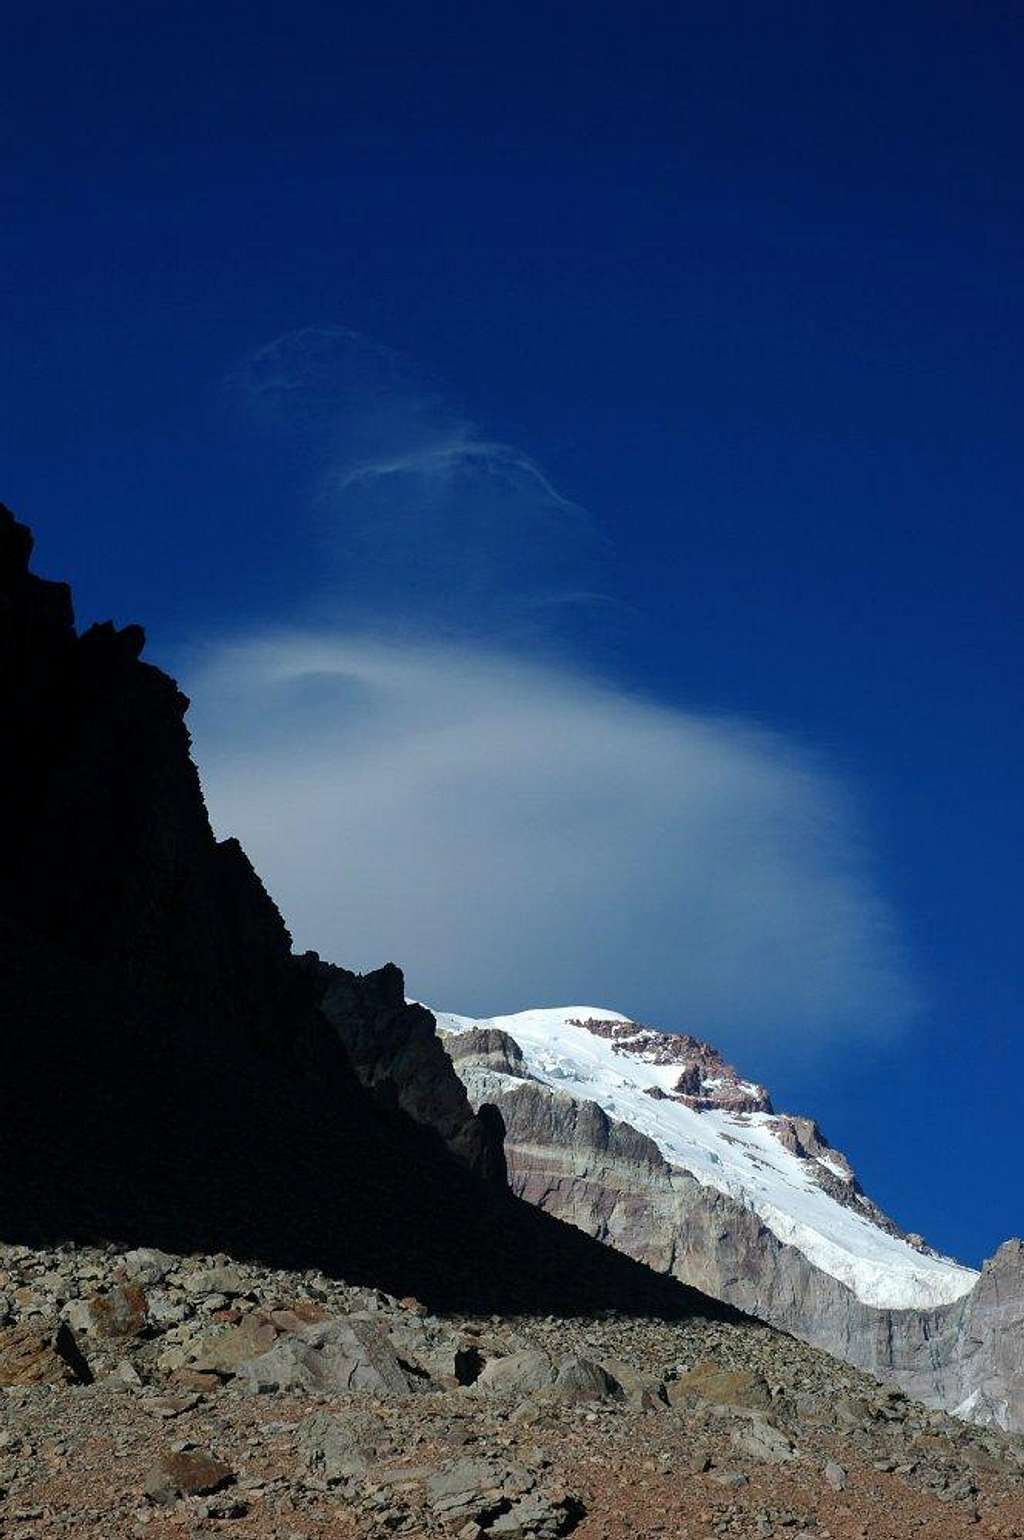 Lenticular cloud above Aconcagua